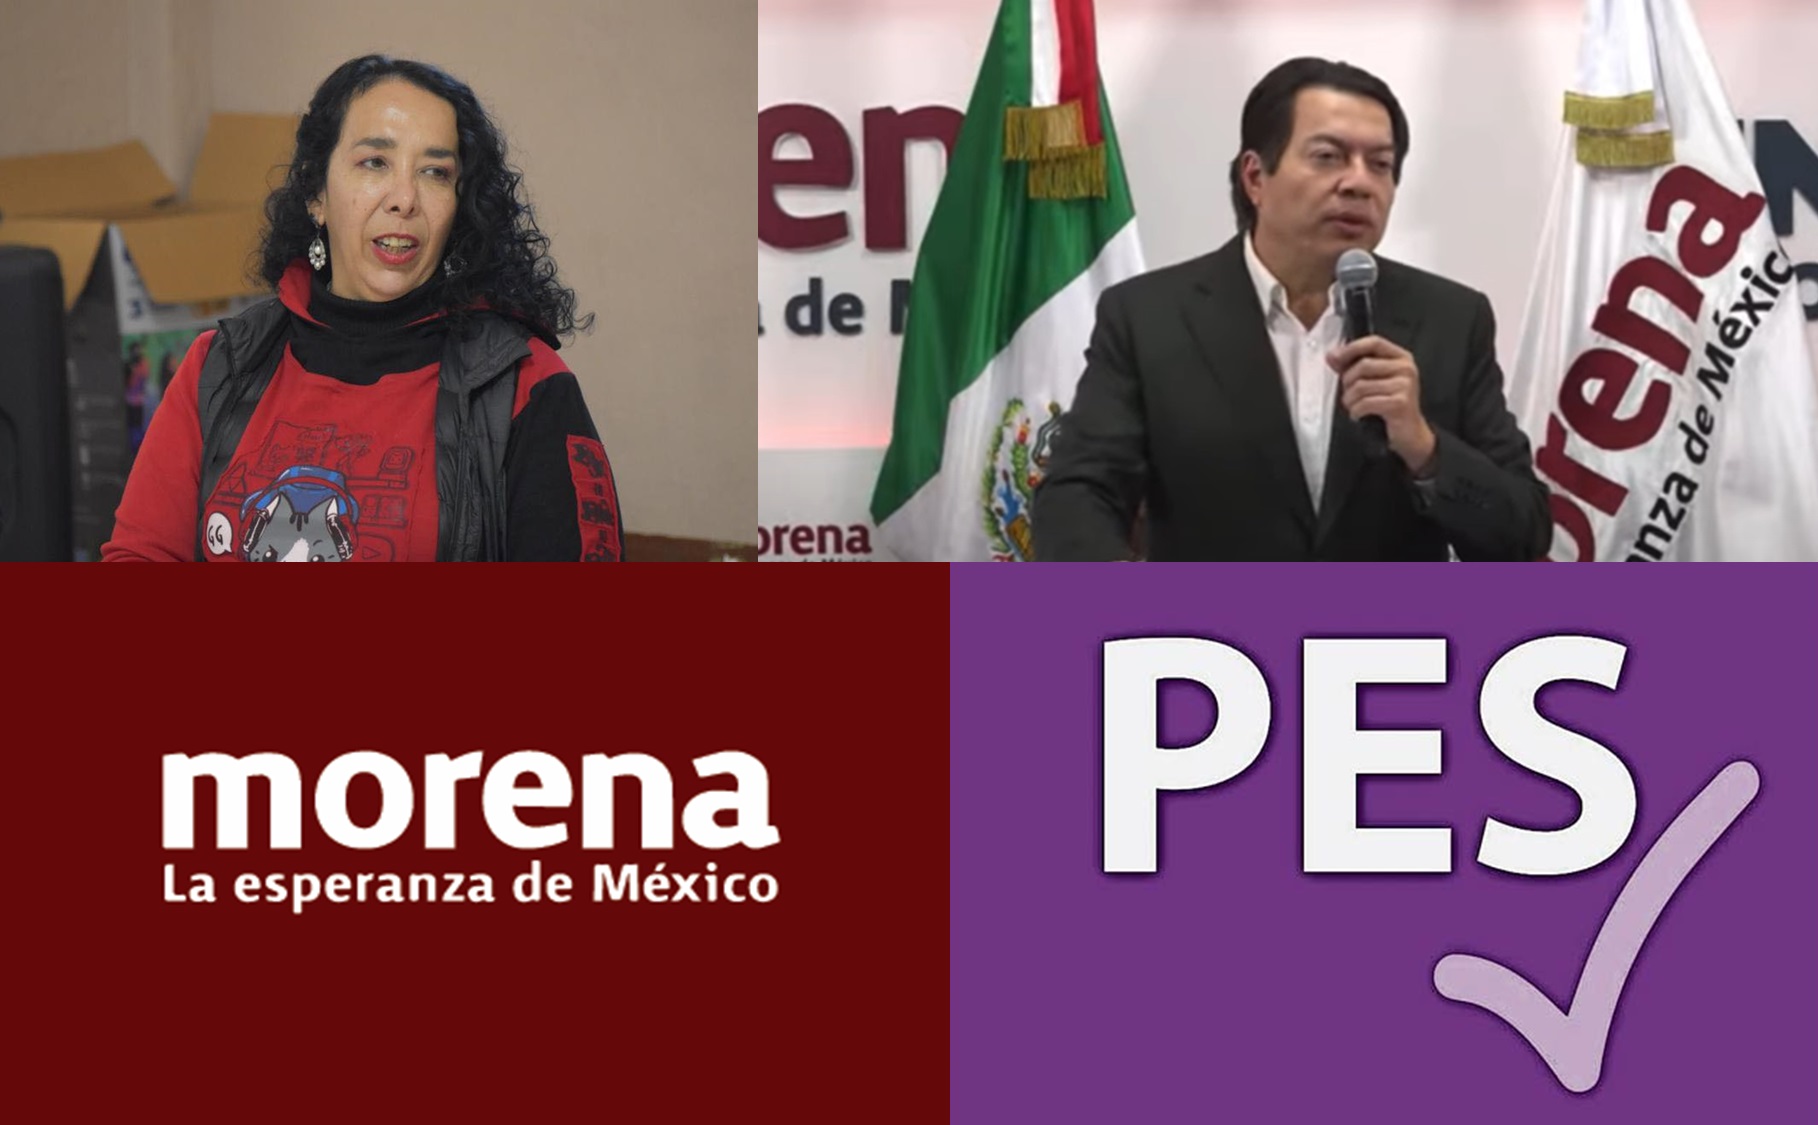 Petición de Araceli Brown motivó rompimiento de la alianza entre Morena y el PES